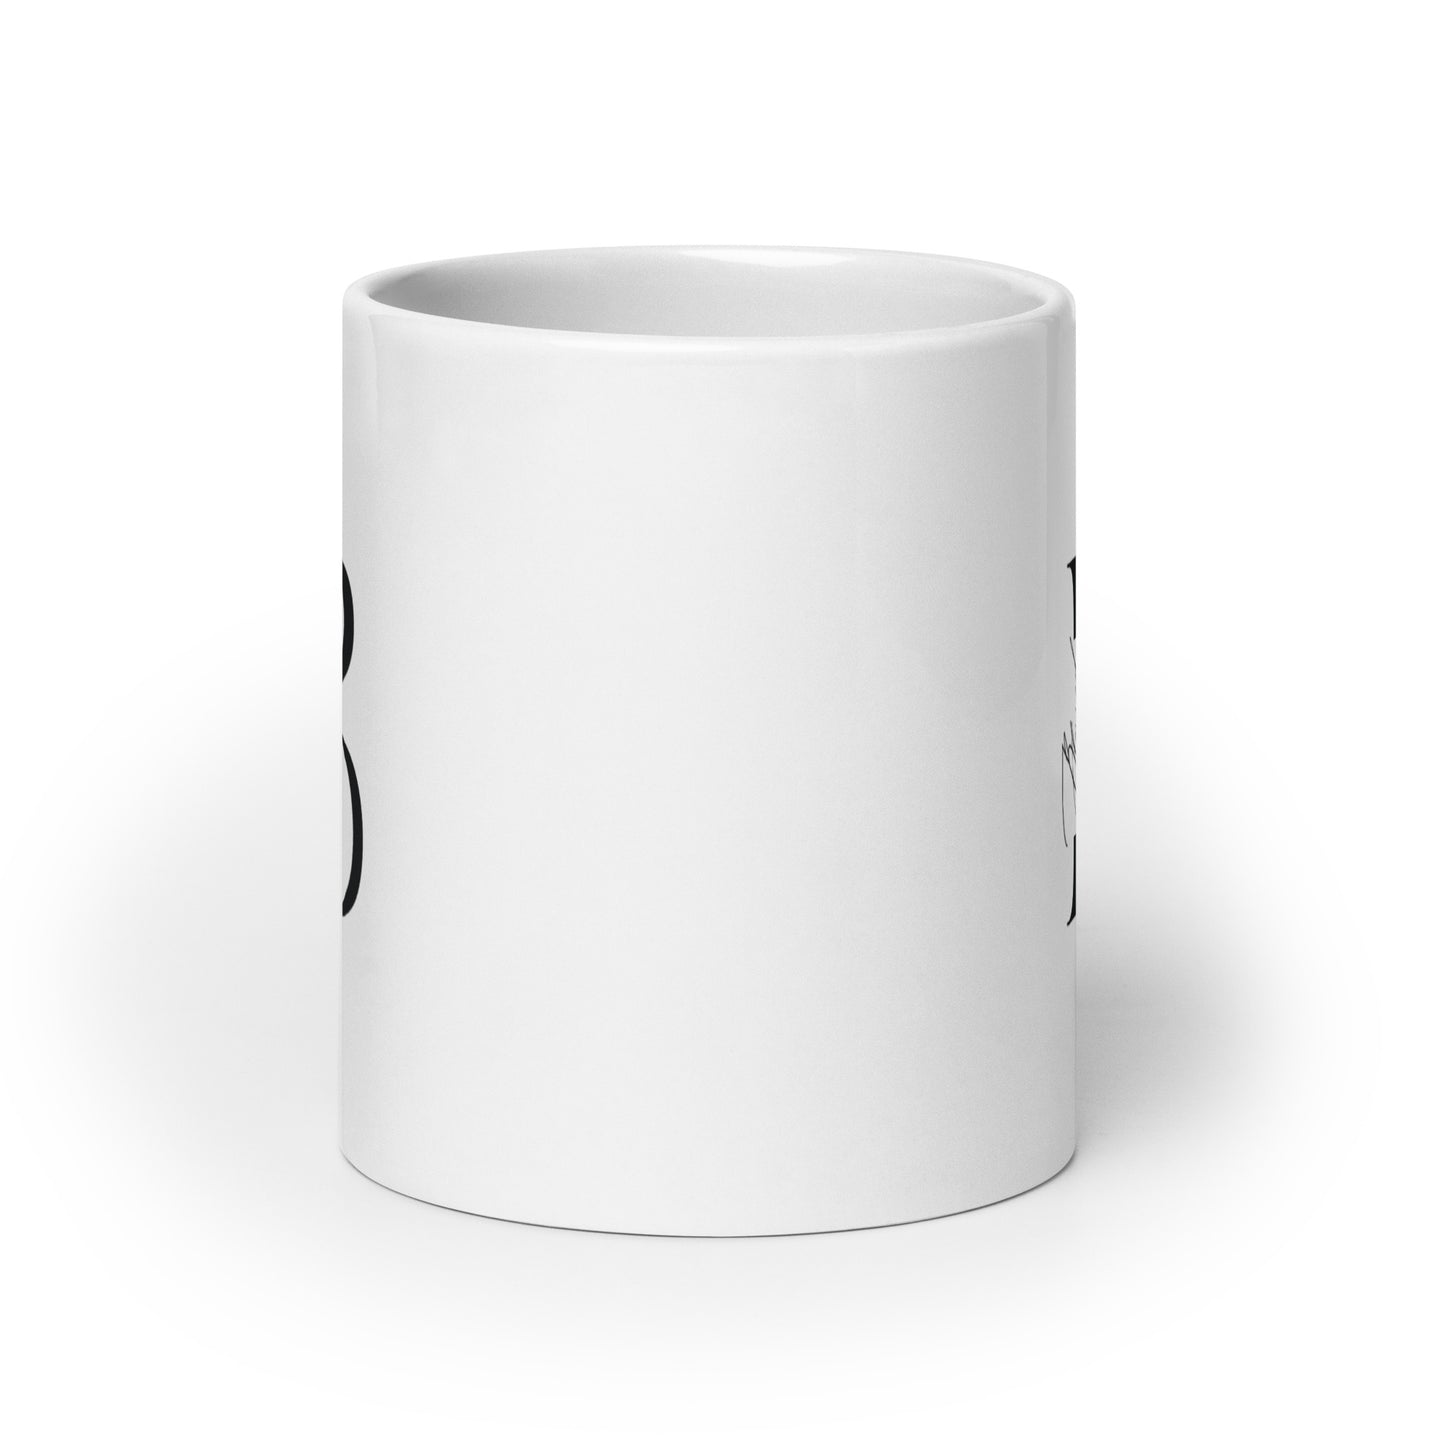 Blessed White glossy mug